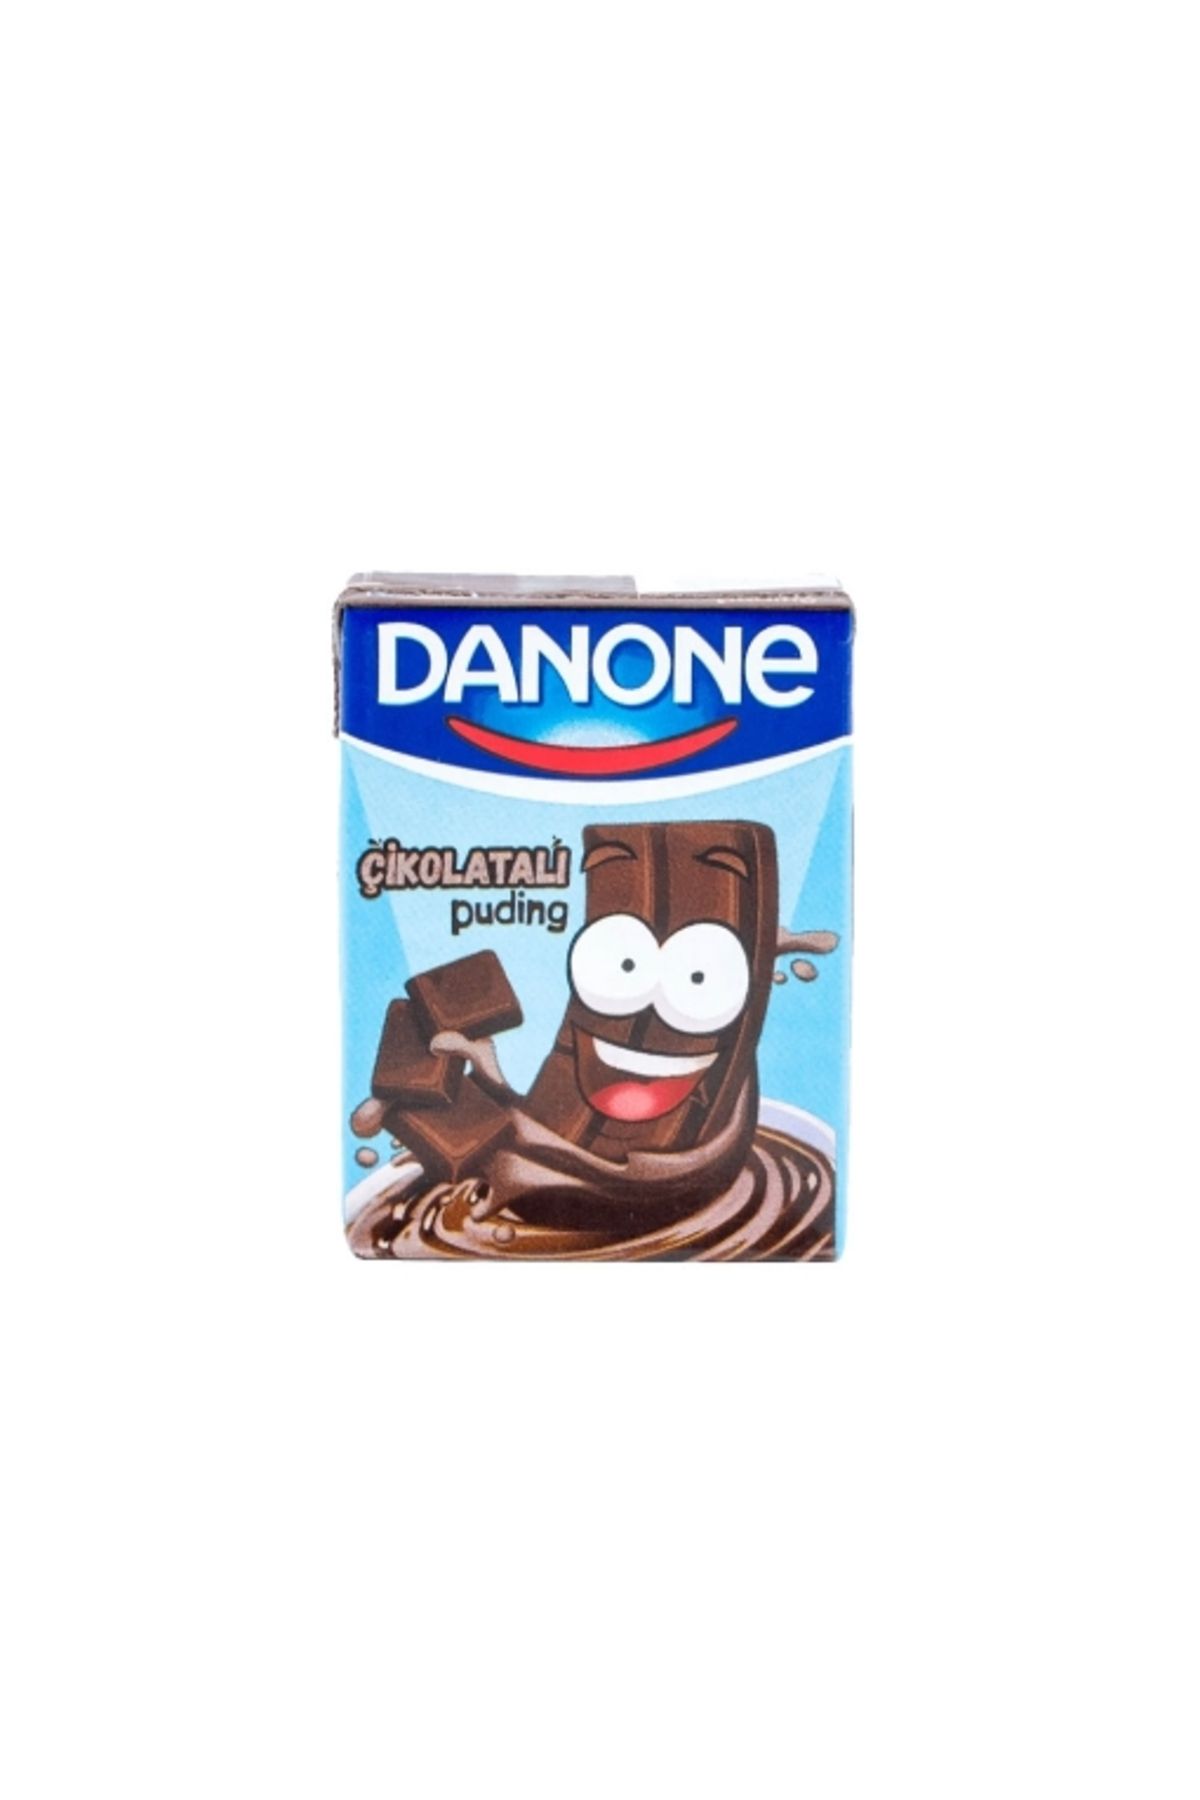 Danone Puding Çikolatalı 210 Gr. (2'Lİ)